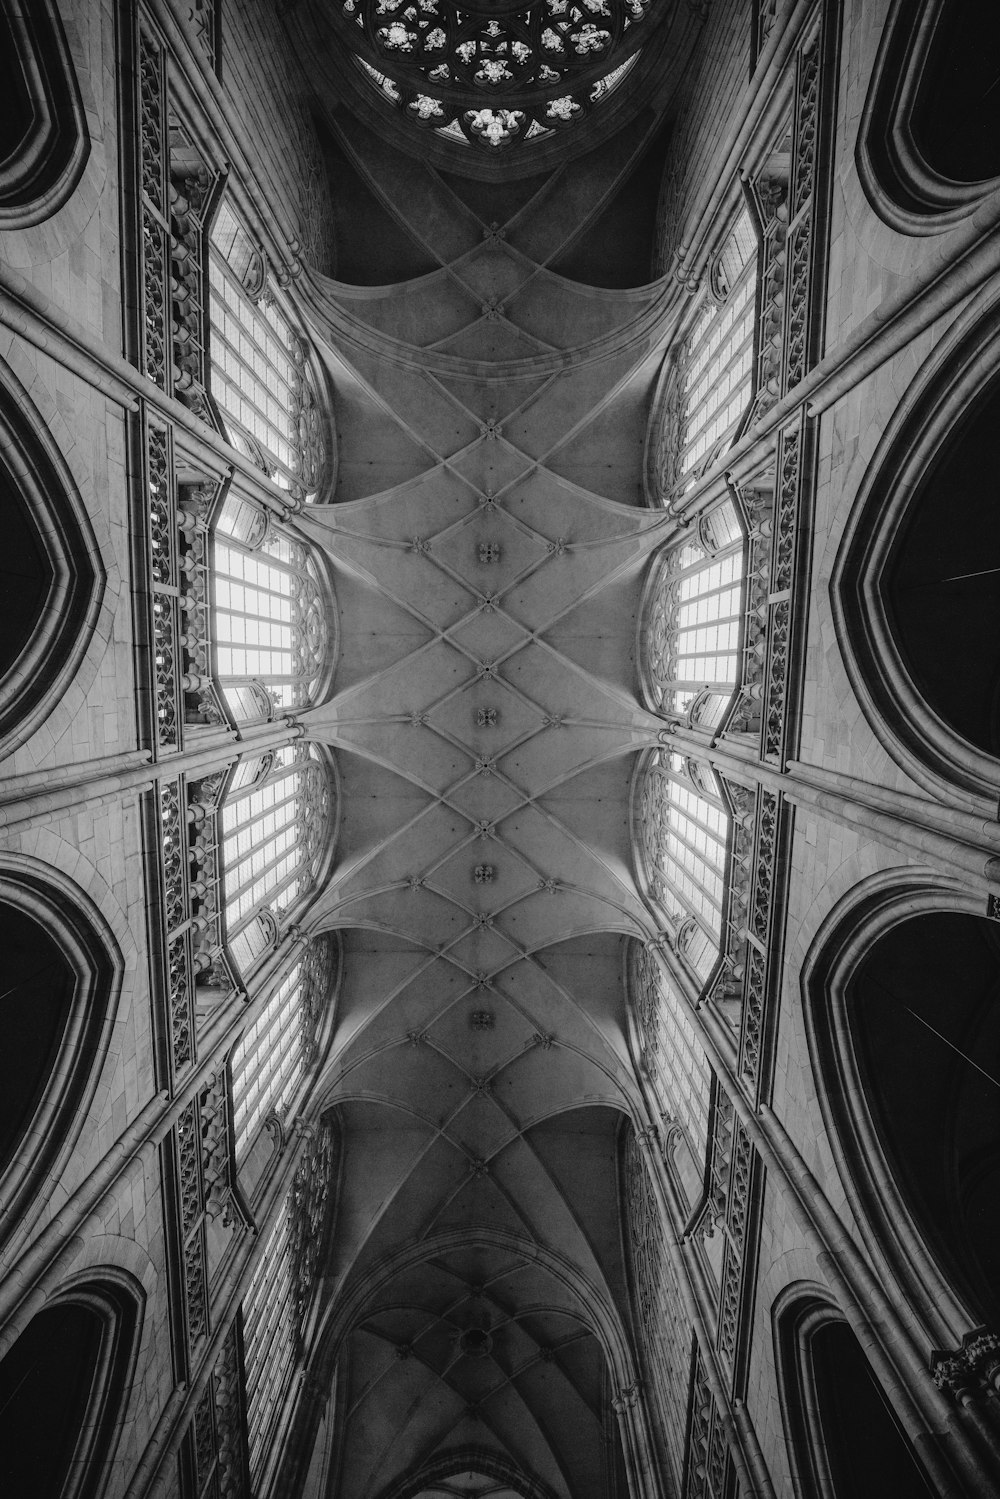 Une photo en noir et blanc du plafond d’une cathédrale